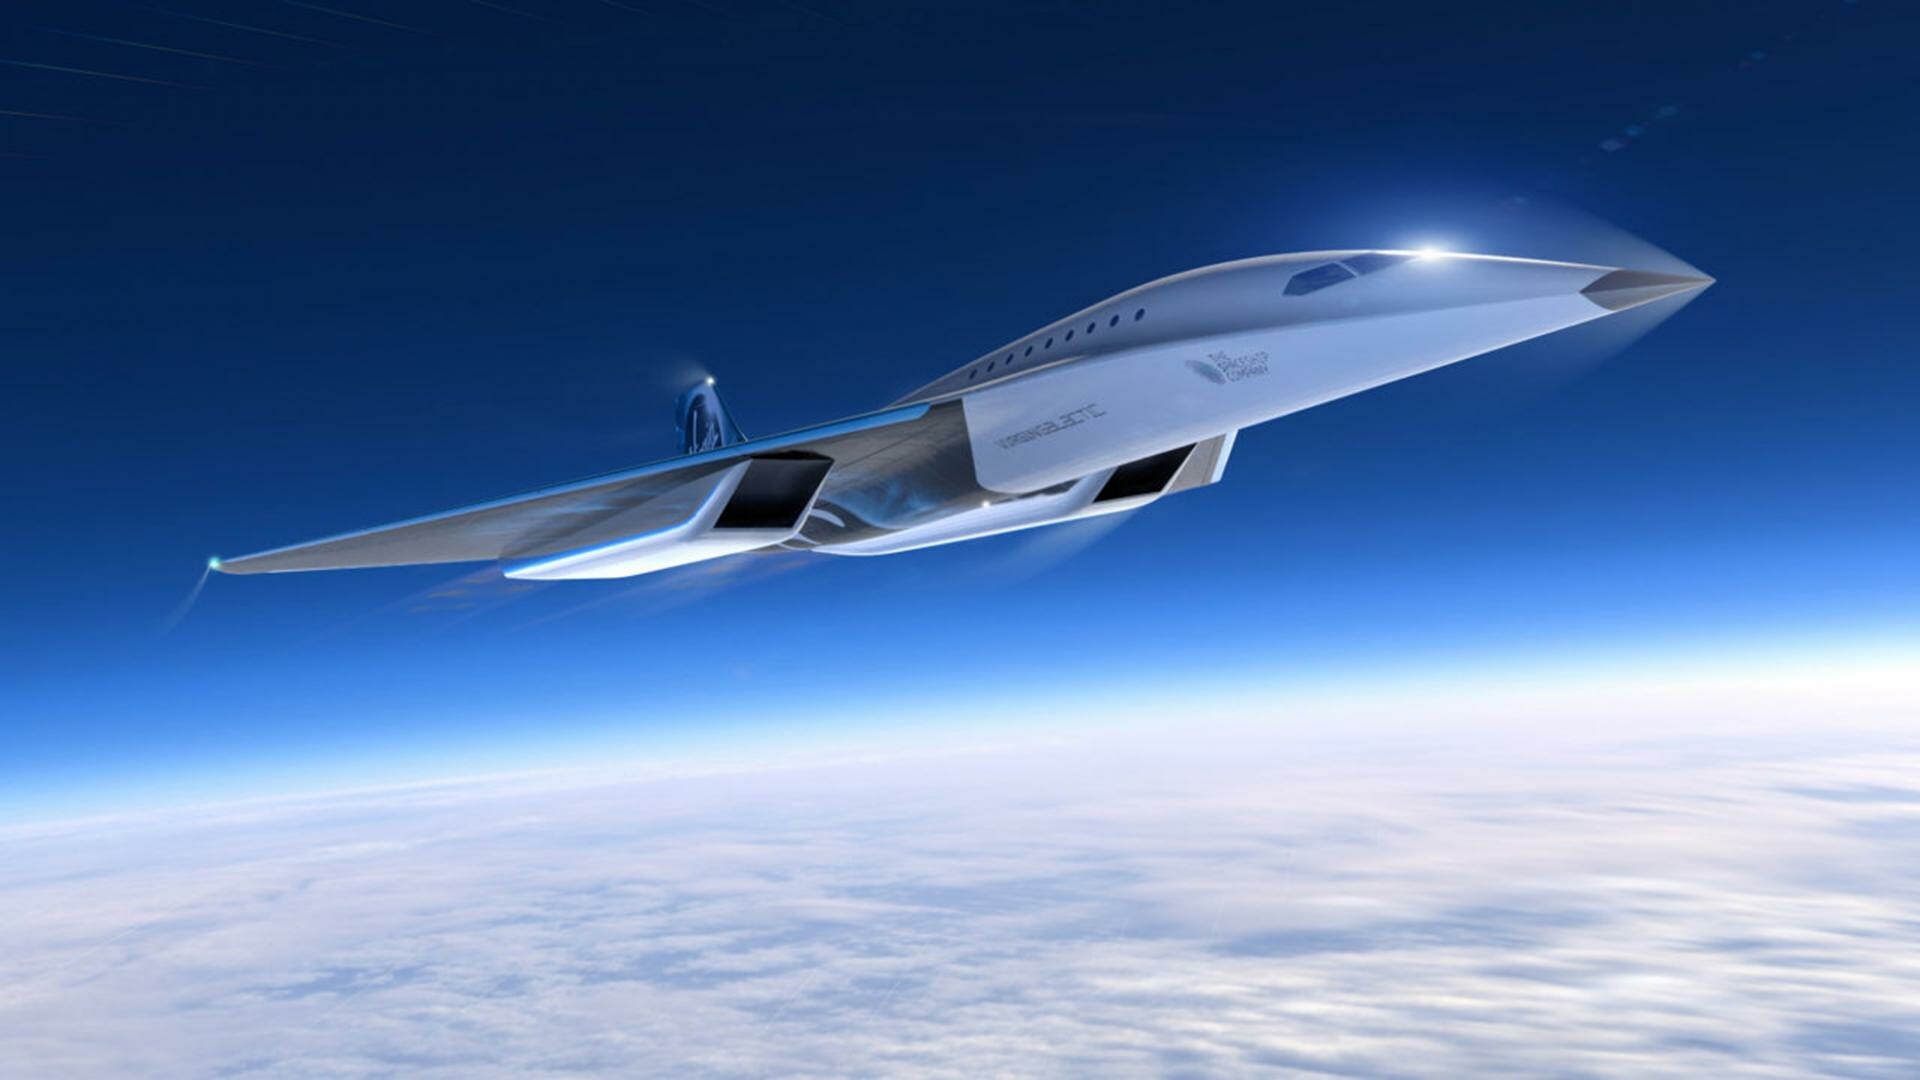 Virgin Galactic: Aerospace brand, A concept for a high-speed passenger aircraft, Mach 3. 1920x1080 Full HD Wallpaper.